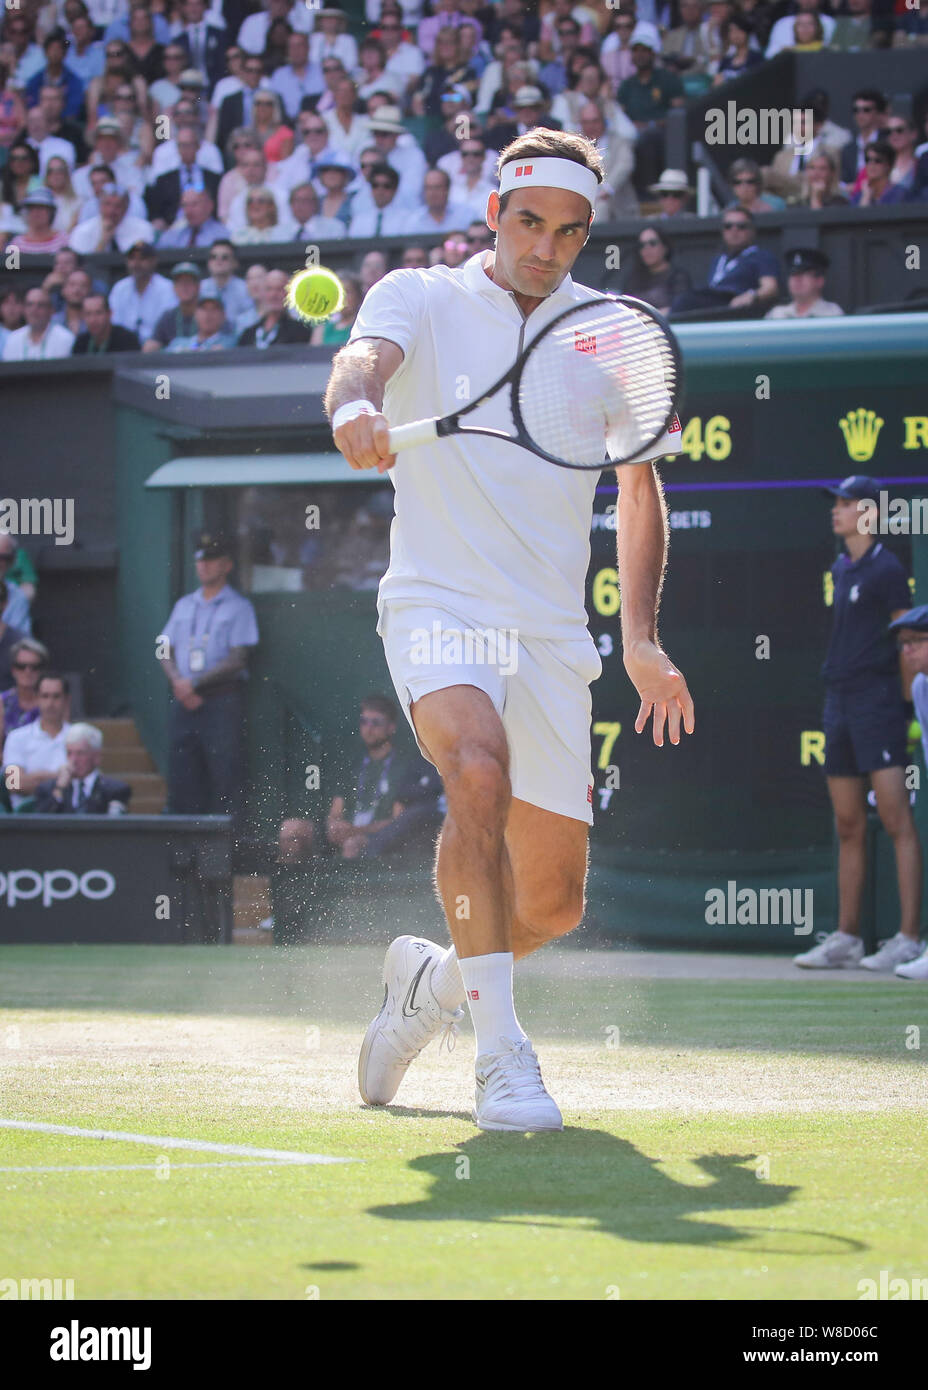 Schweizer Tennisspieler Roger Federer spielen Rückhand geschossen während 2019 Wimbledon Championships, London, England, Vereinigtes Königreich Stockfoto